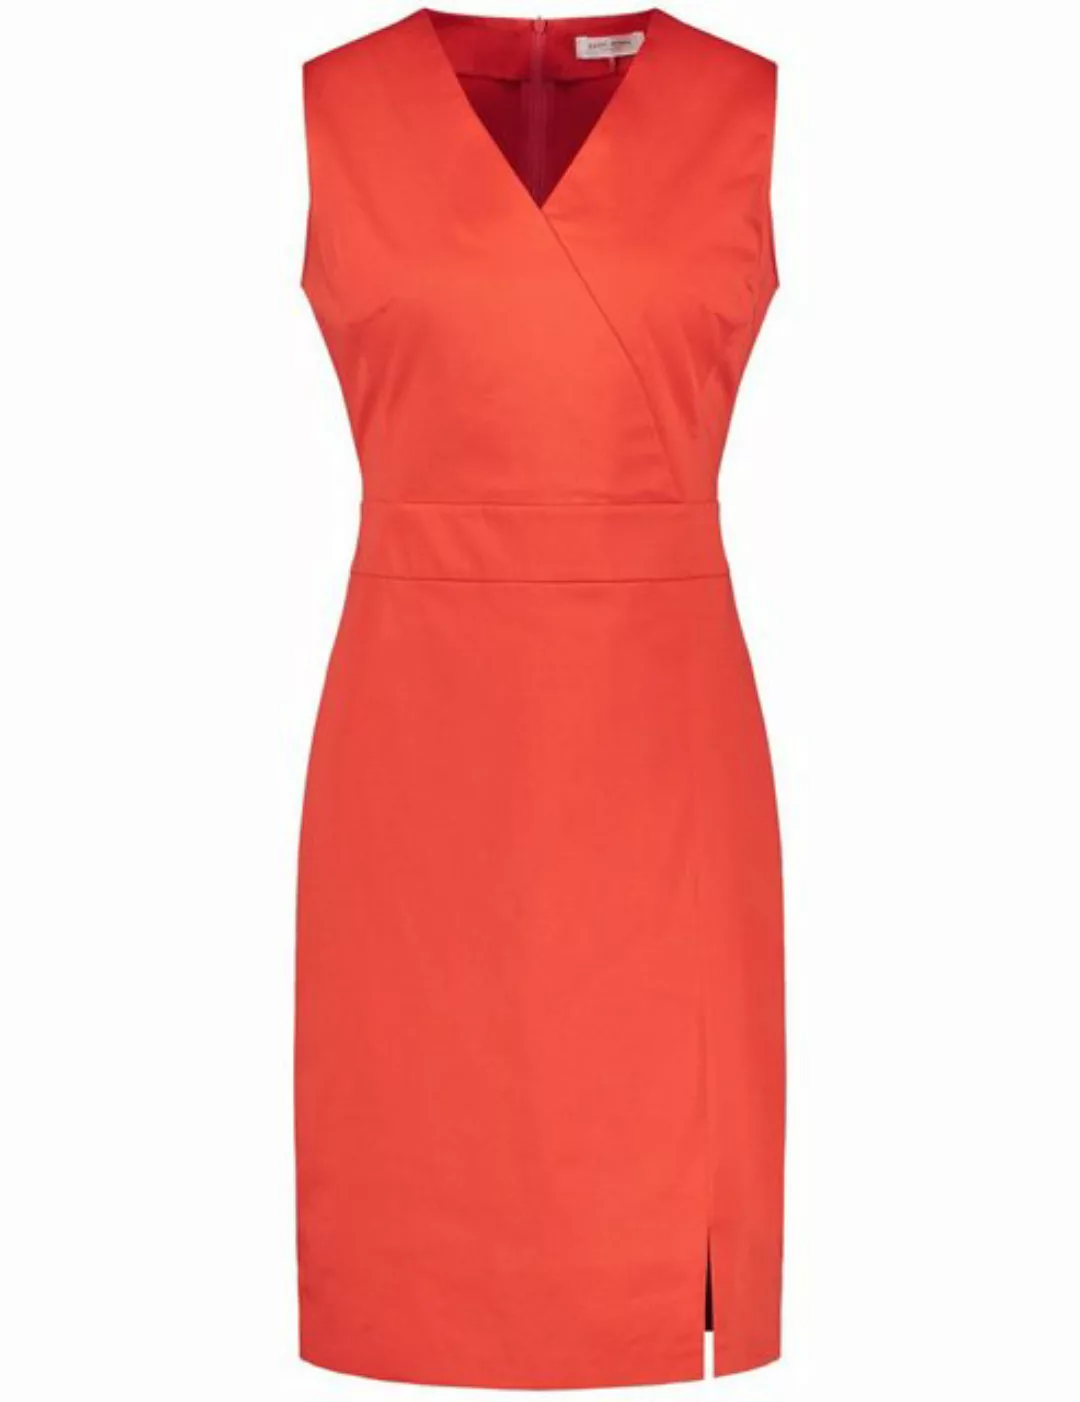 GERRY WEBER A-Linien-Kleid Figurbetontes Etuikleid günstig online kaufen